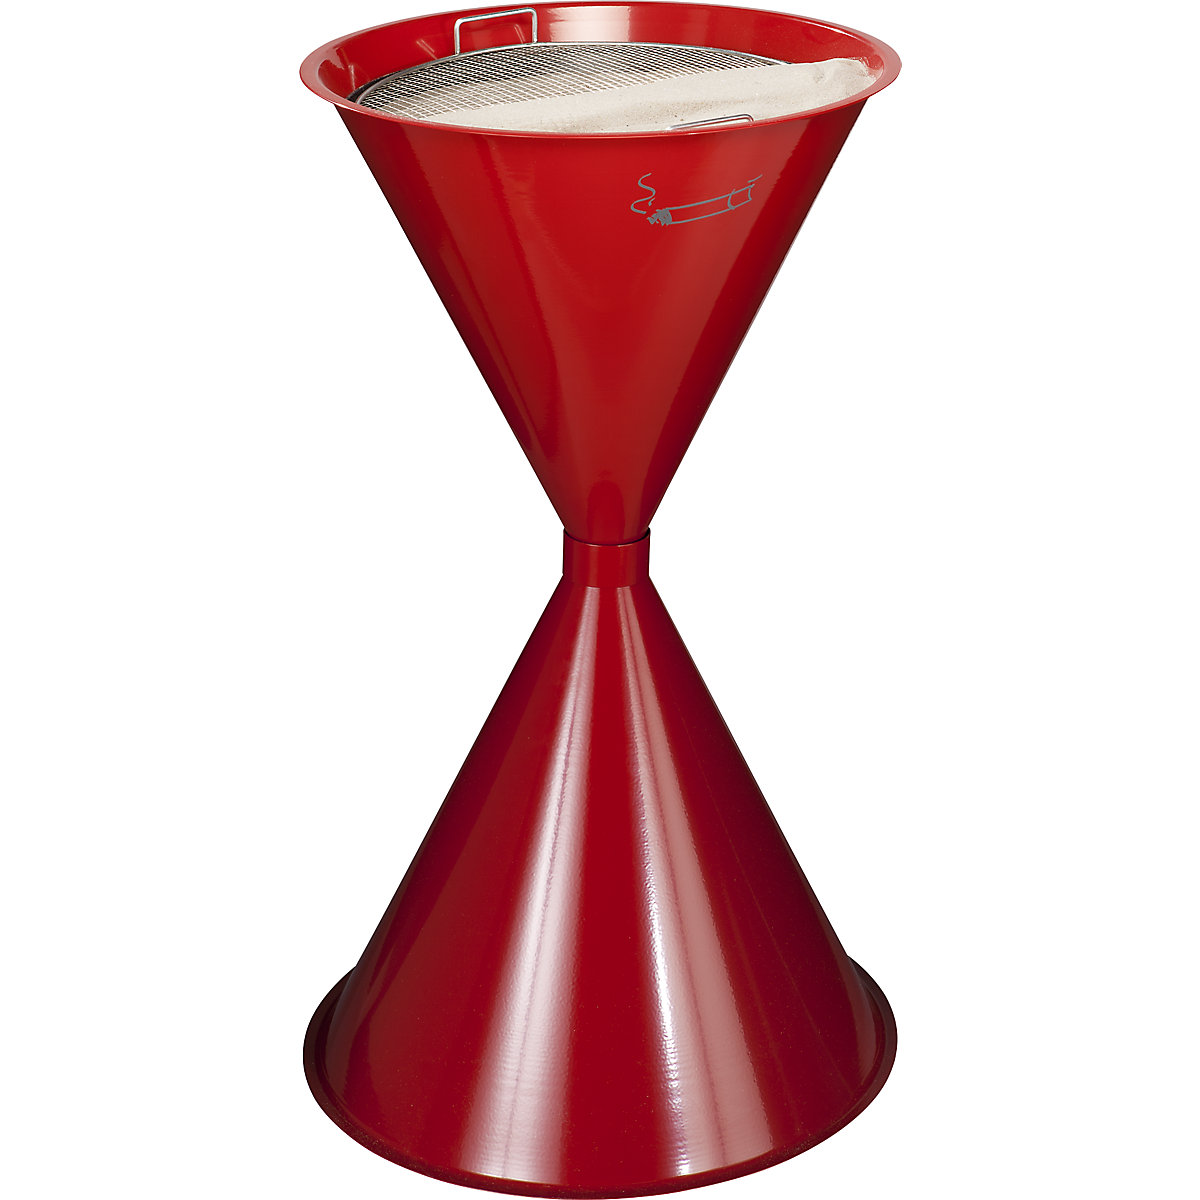 VAR – Kovový kuželový popelník, ocelový plech s práškovým vypalovaným lakem, ohnivě červená